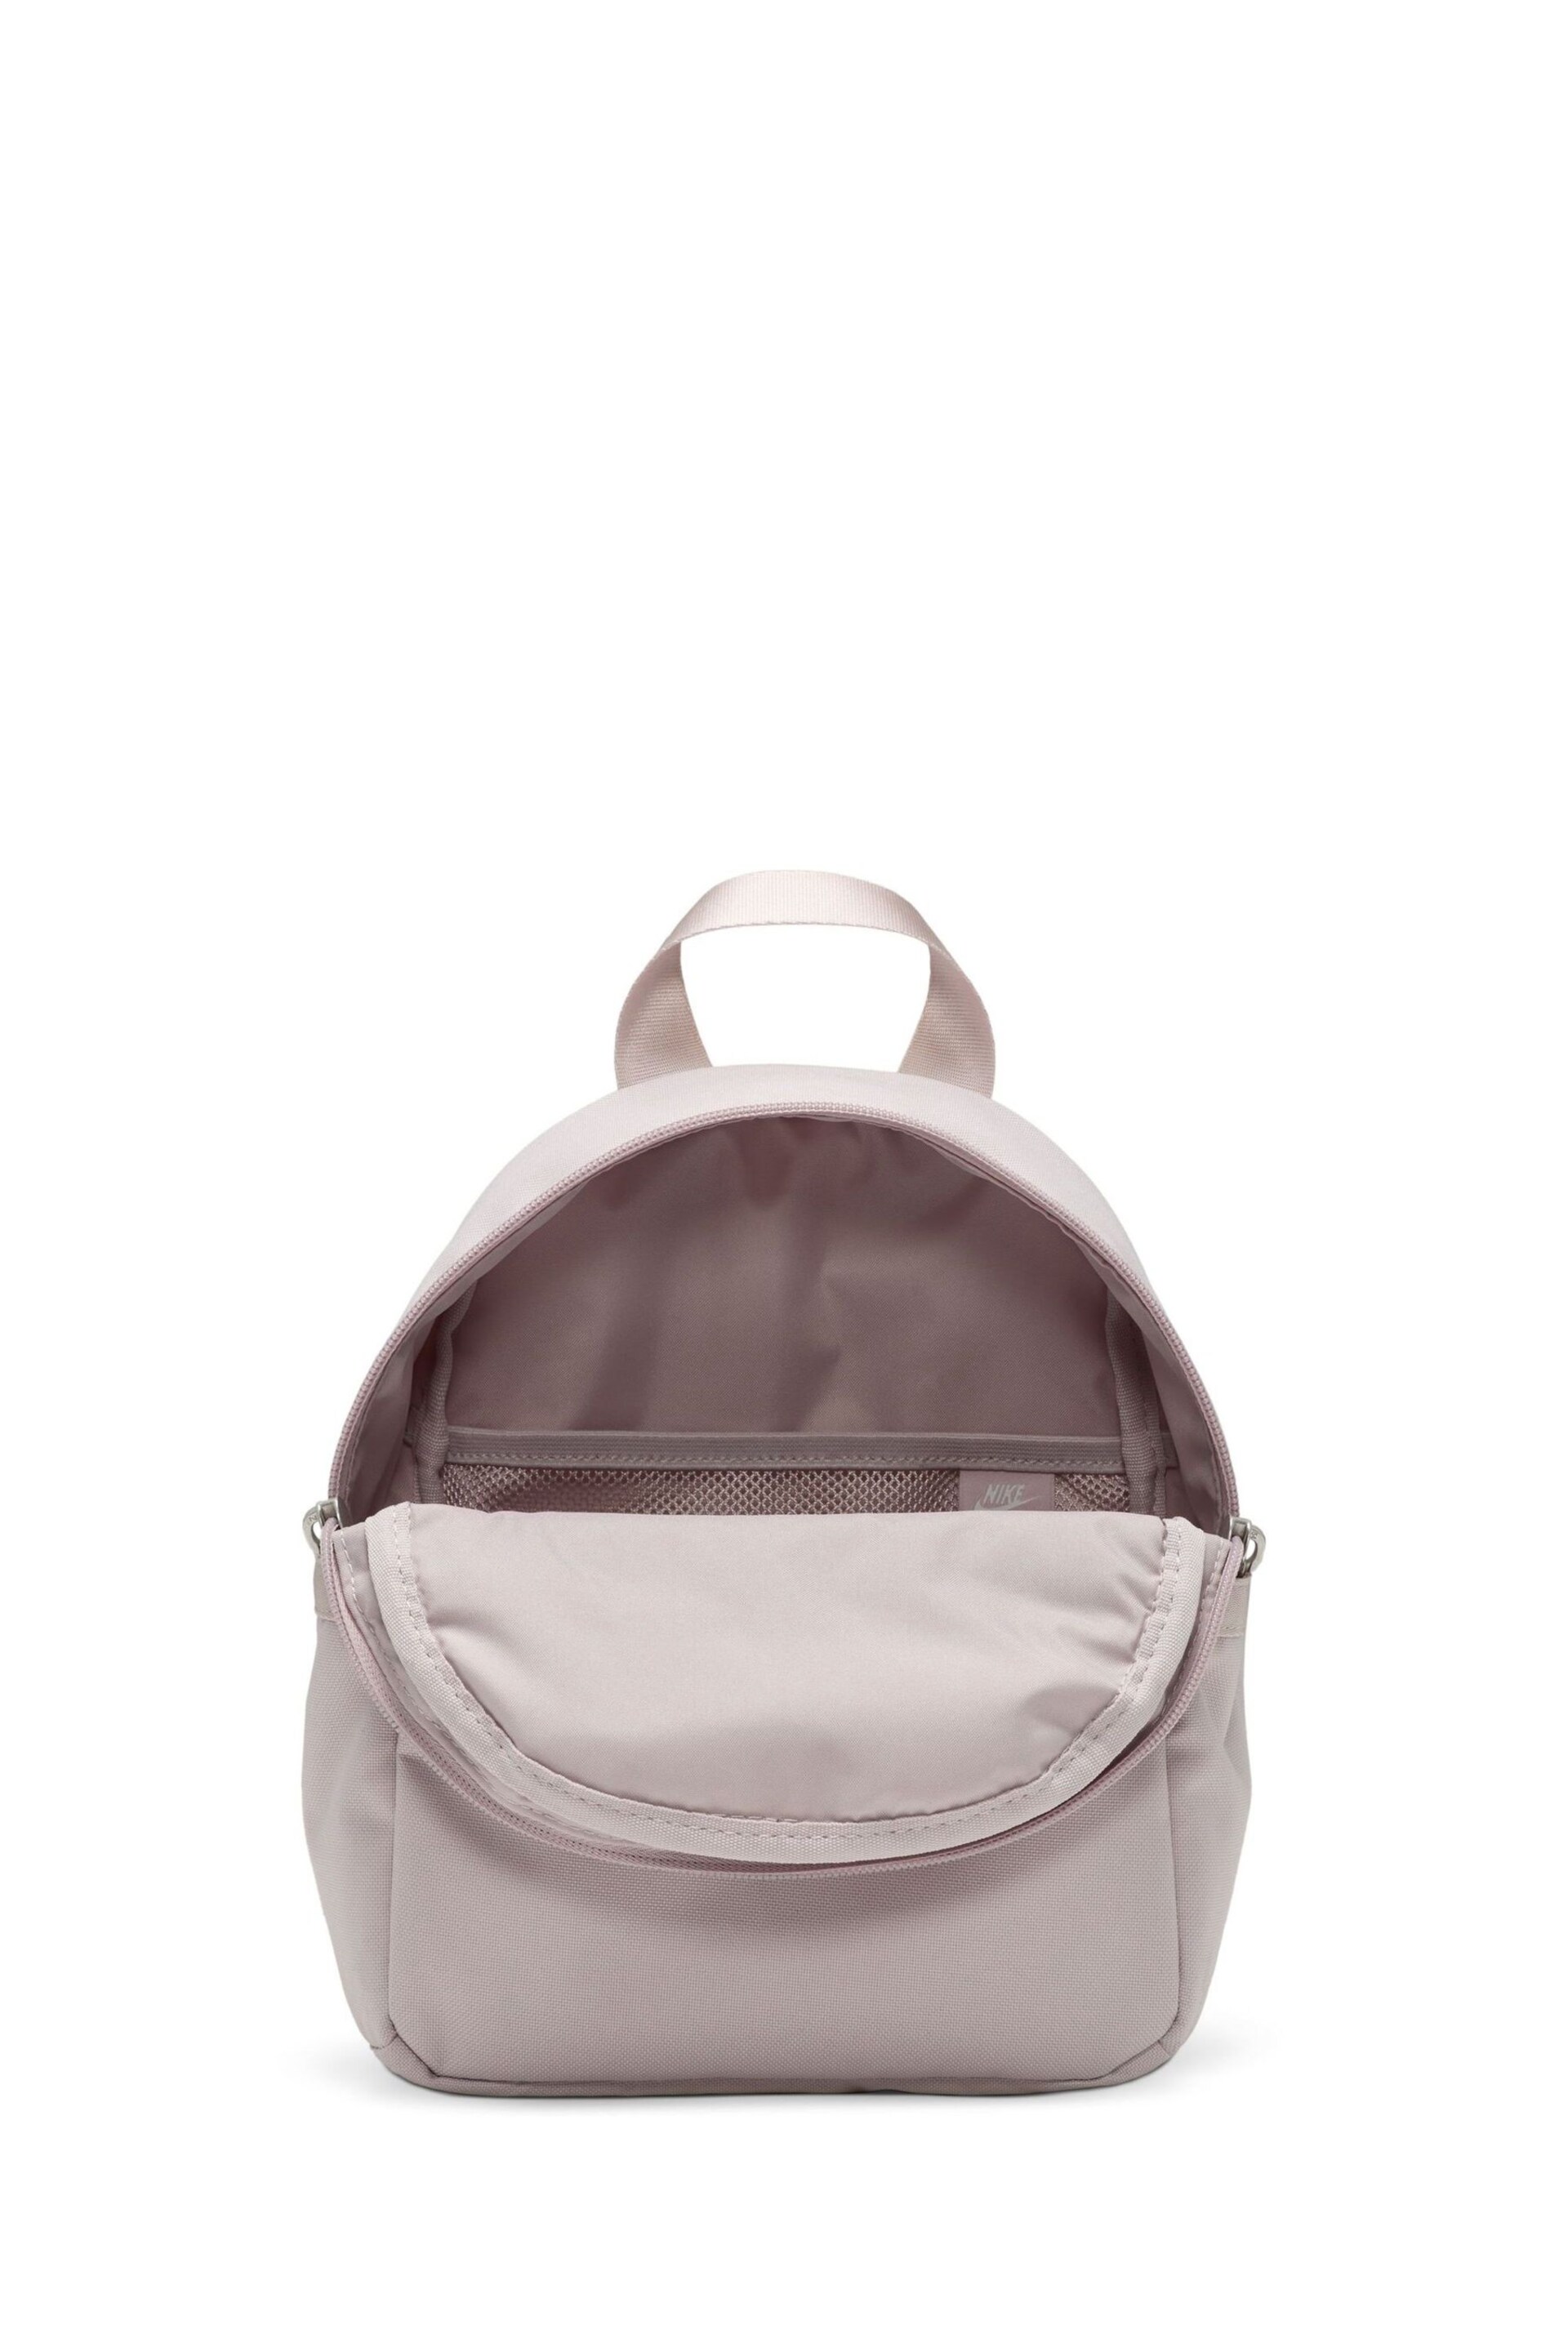 Nike Pink Mini Womens 6L Backpack - Image 8 of 12